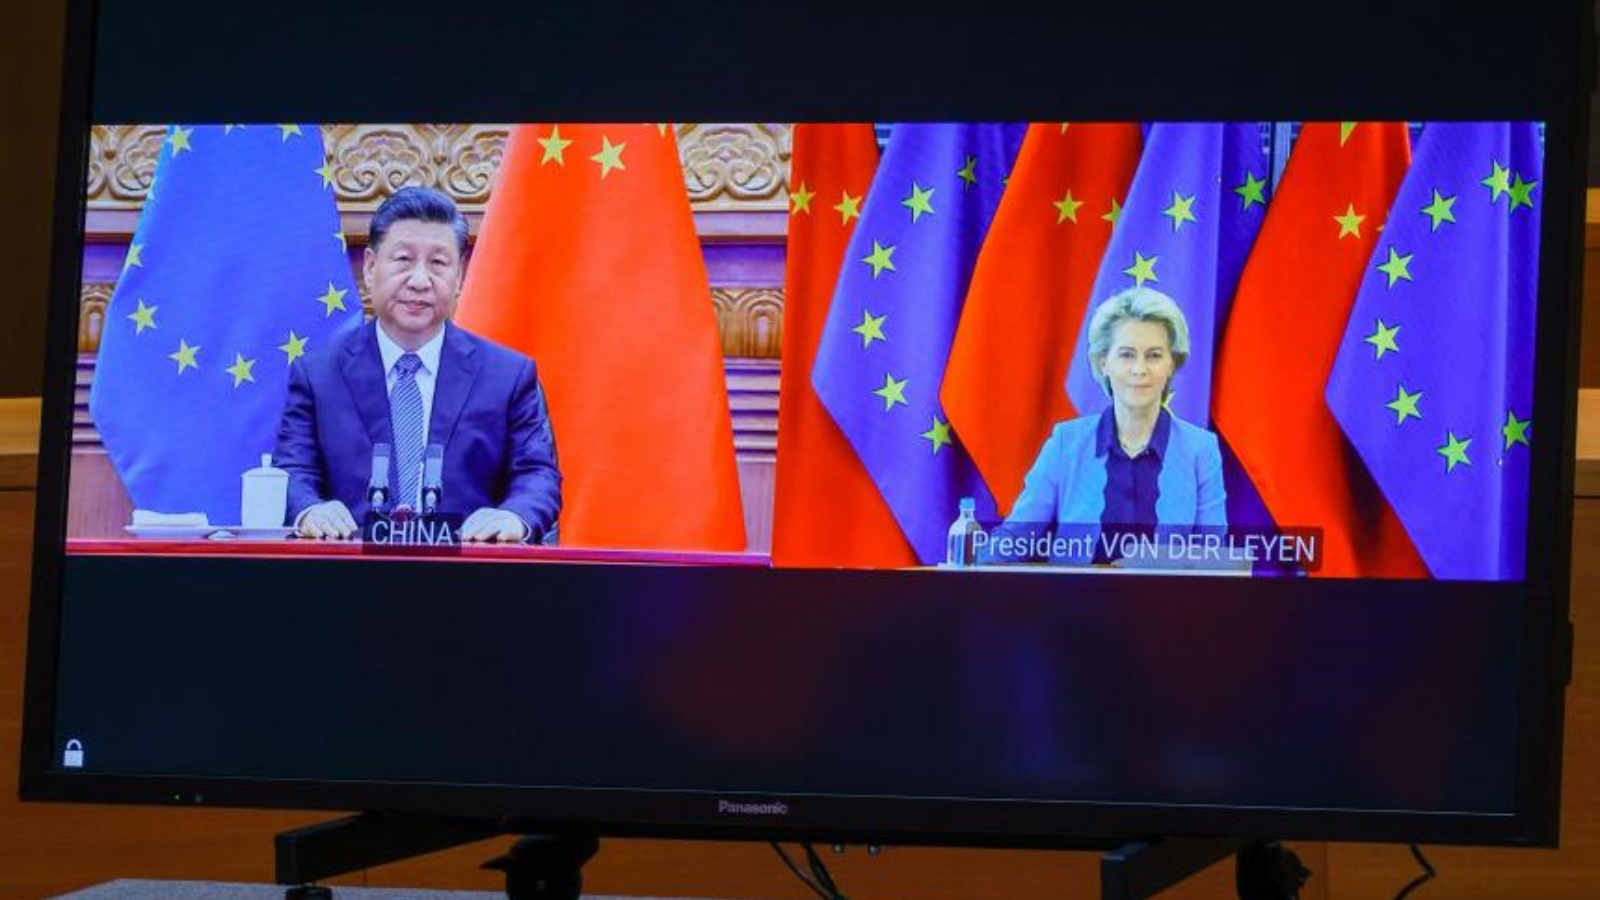 الرئيس الصيني شي جينبينغ (على اليسار) ورئيسة المفوضية الأوروبية أورسولا فون دير لاين يظهران عبر رابط فيديو في قمة بين الاتحاد الأوروبي والصين في 1 أبريل 2022.